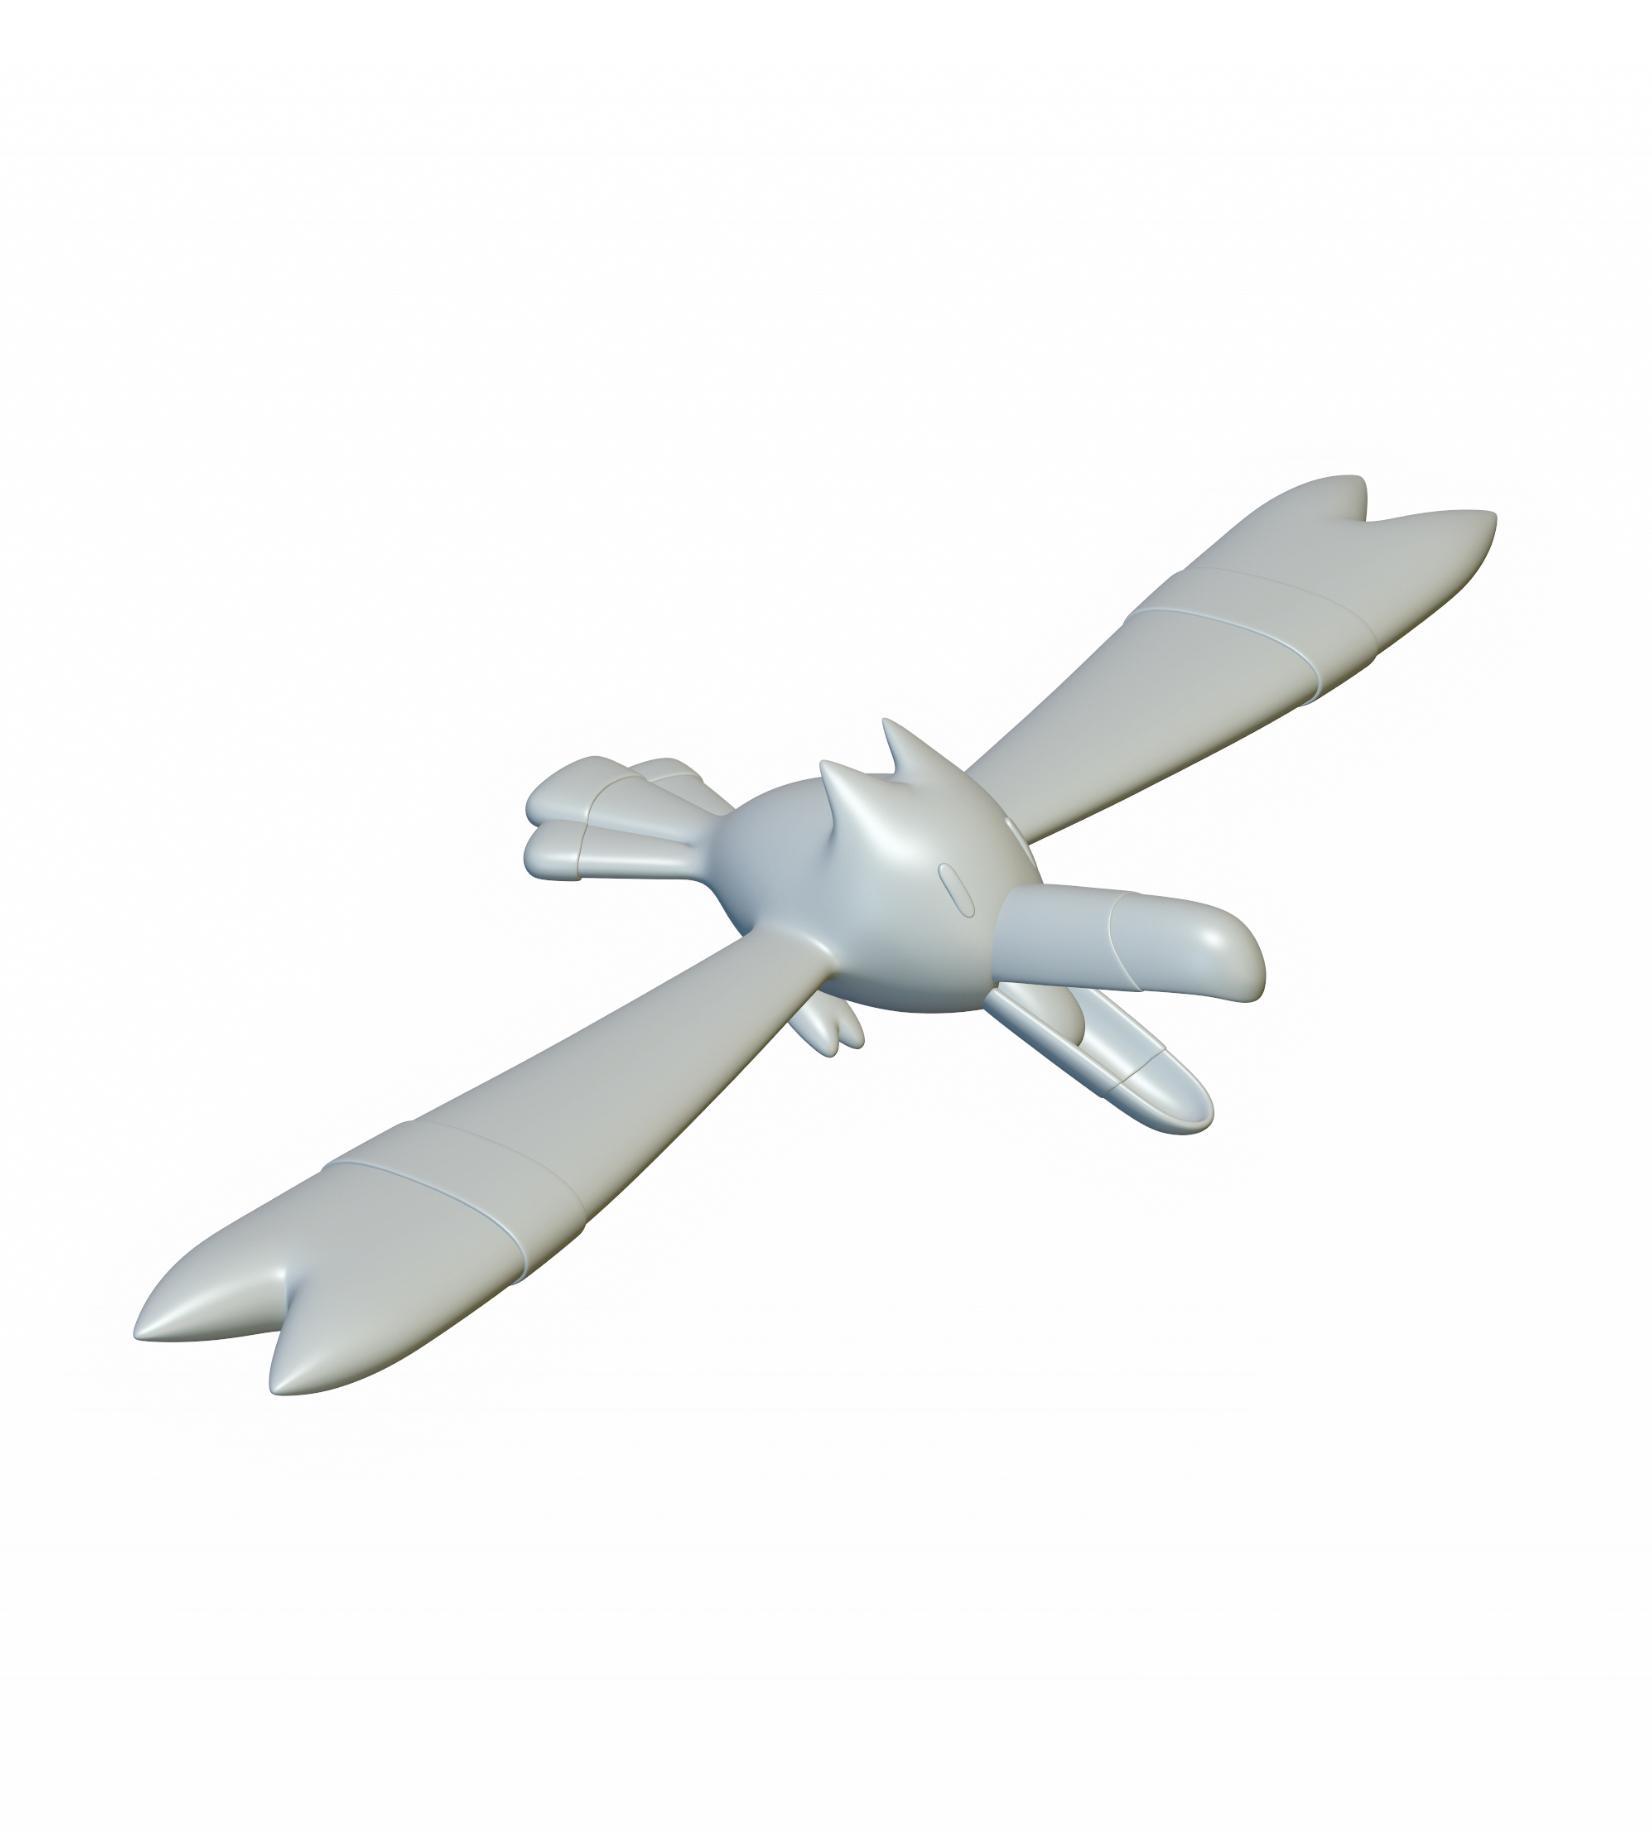 Pokemon Wingull #278 - Optimized for 3D Printing 3d model